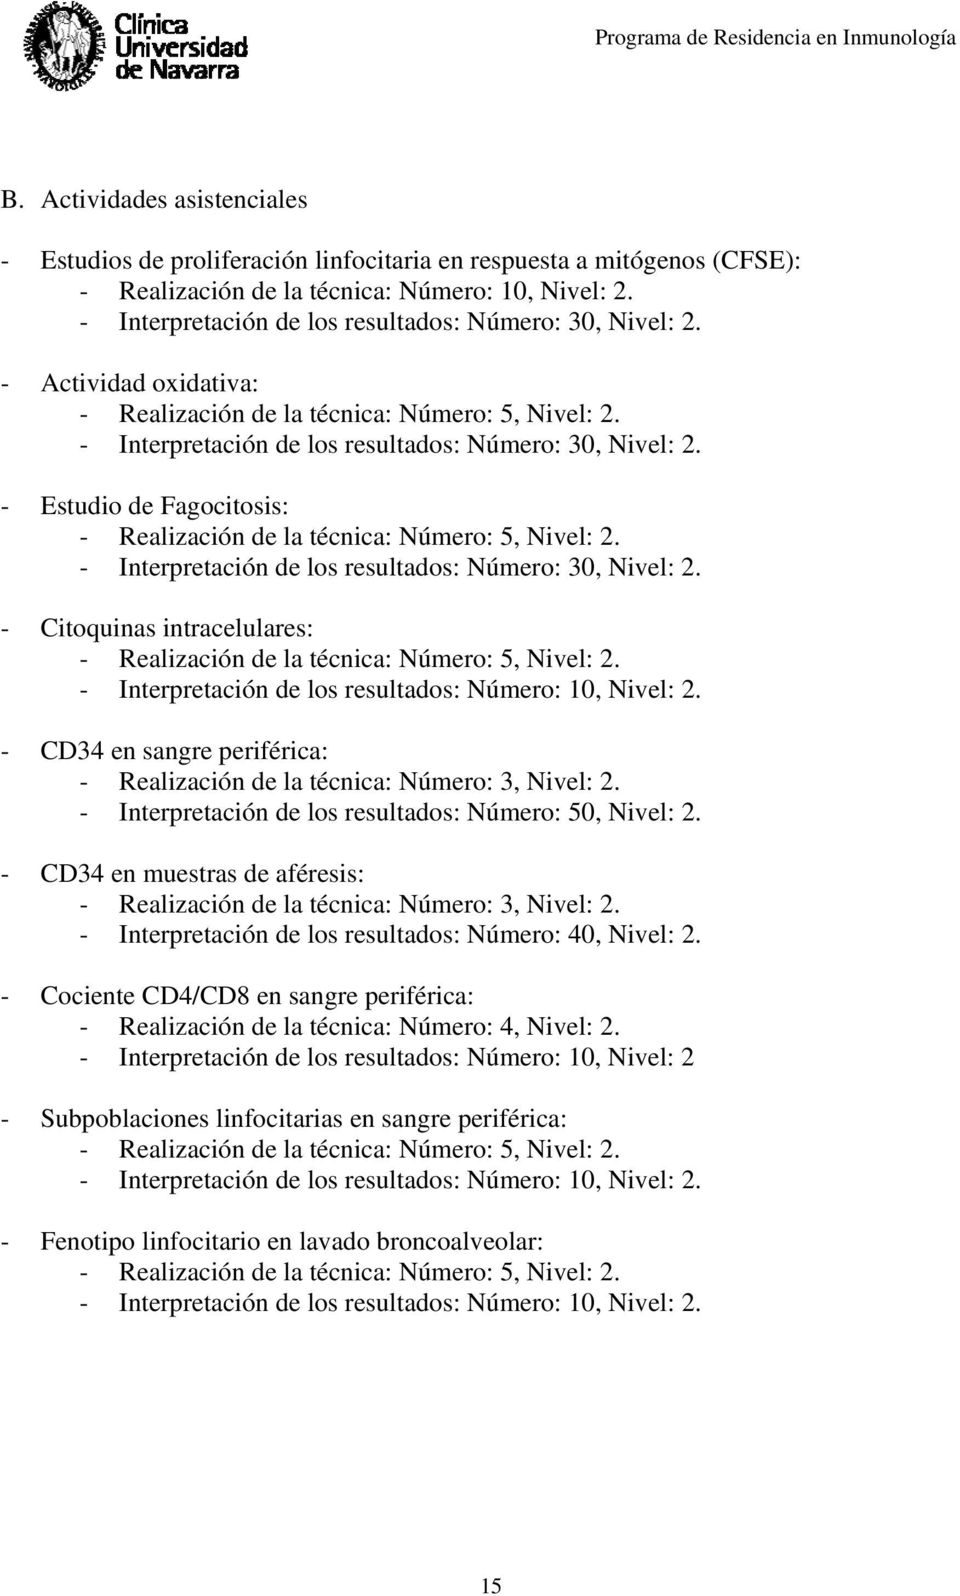 - Estudio de Fagocitosis: - Realización de la técnica: Número: 5, Nivel: 2. - Interpretación de los resultados: Número: 30, Nivel: 2.